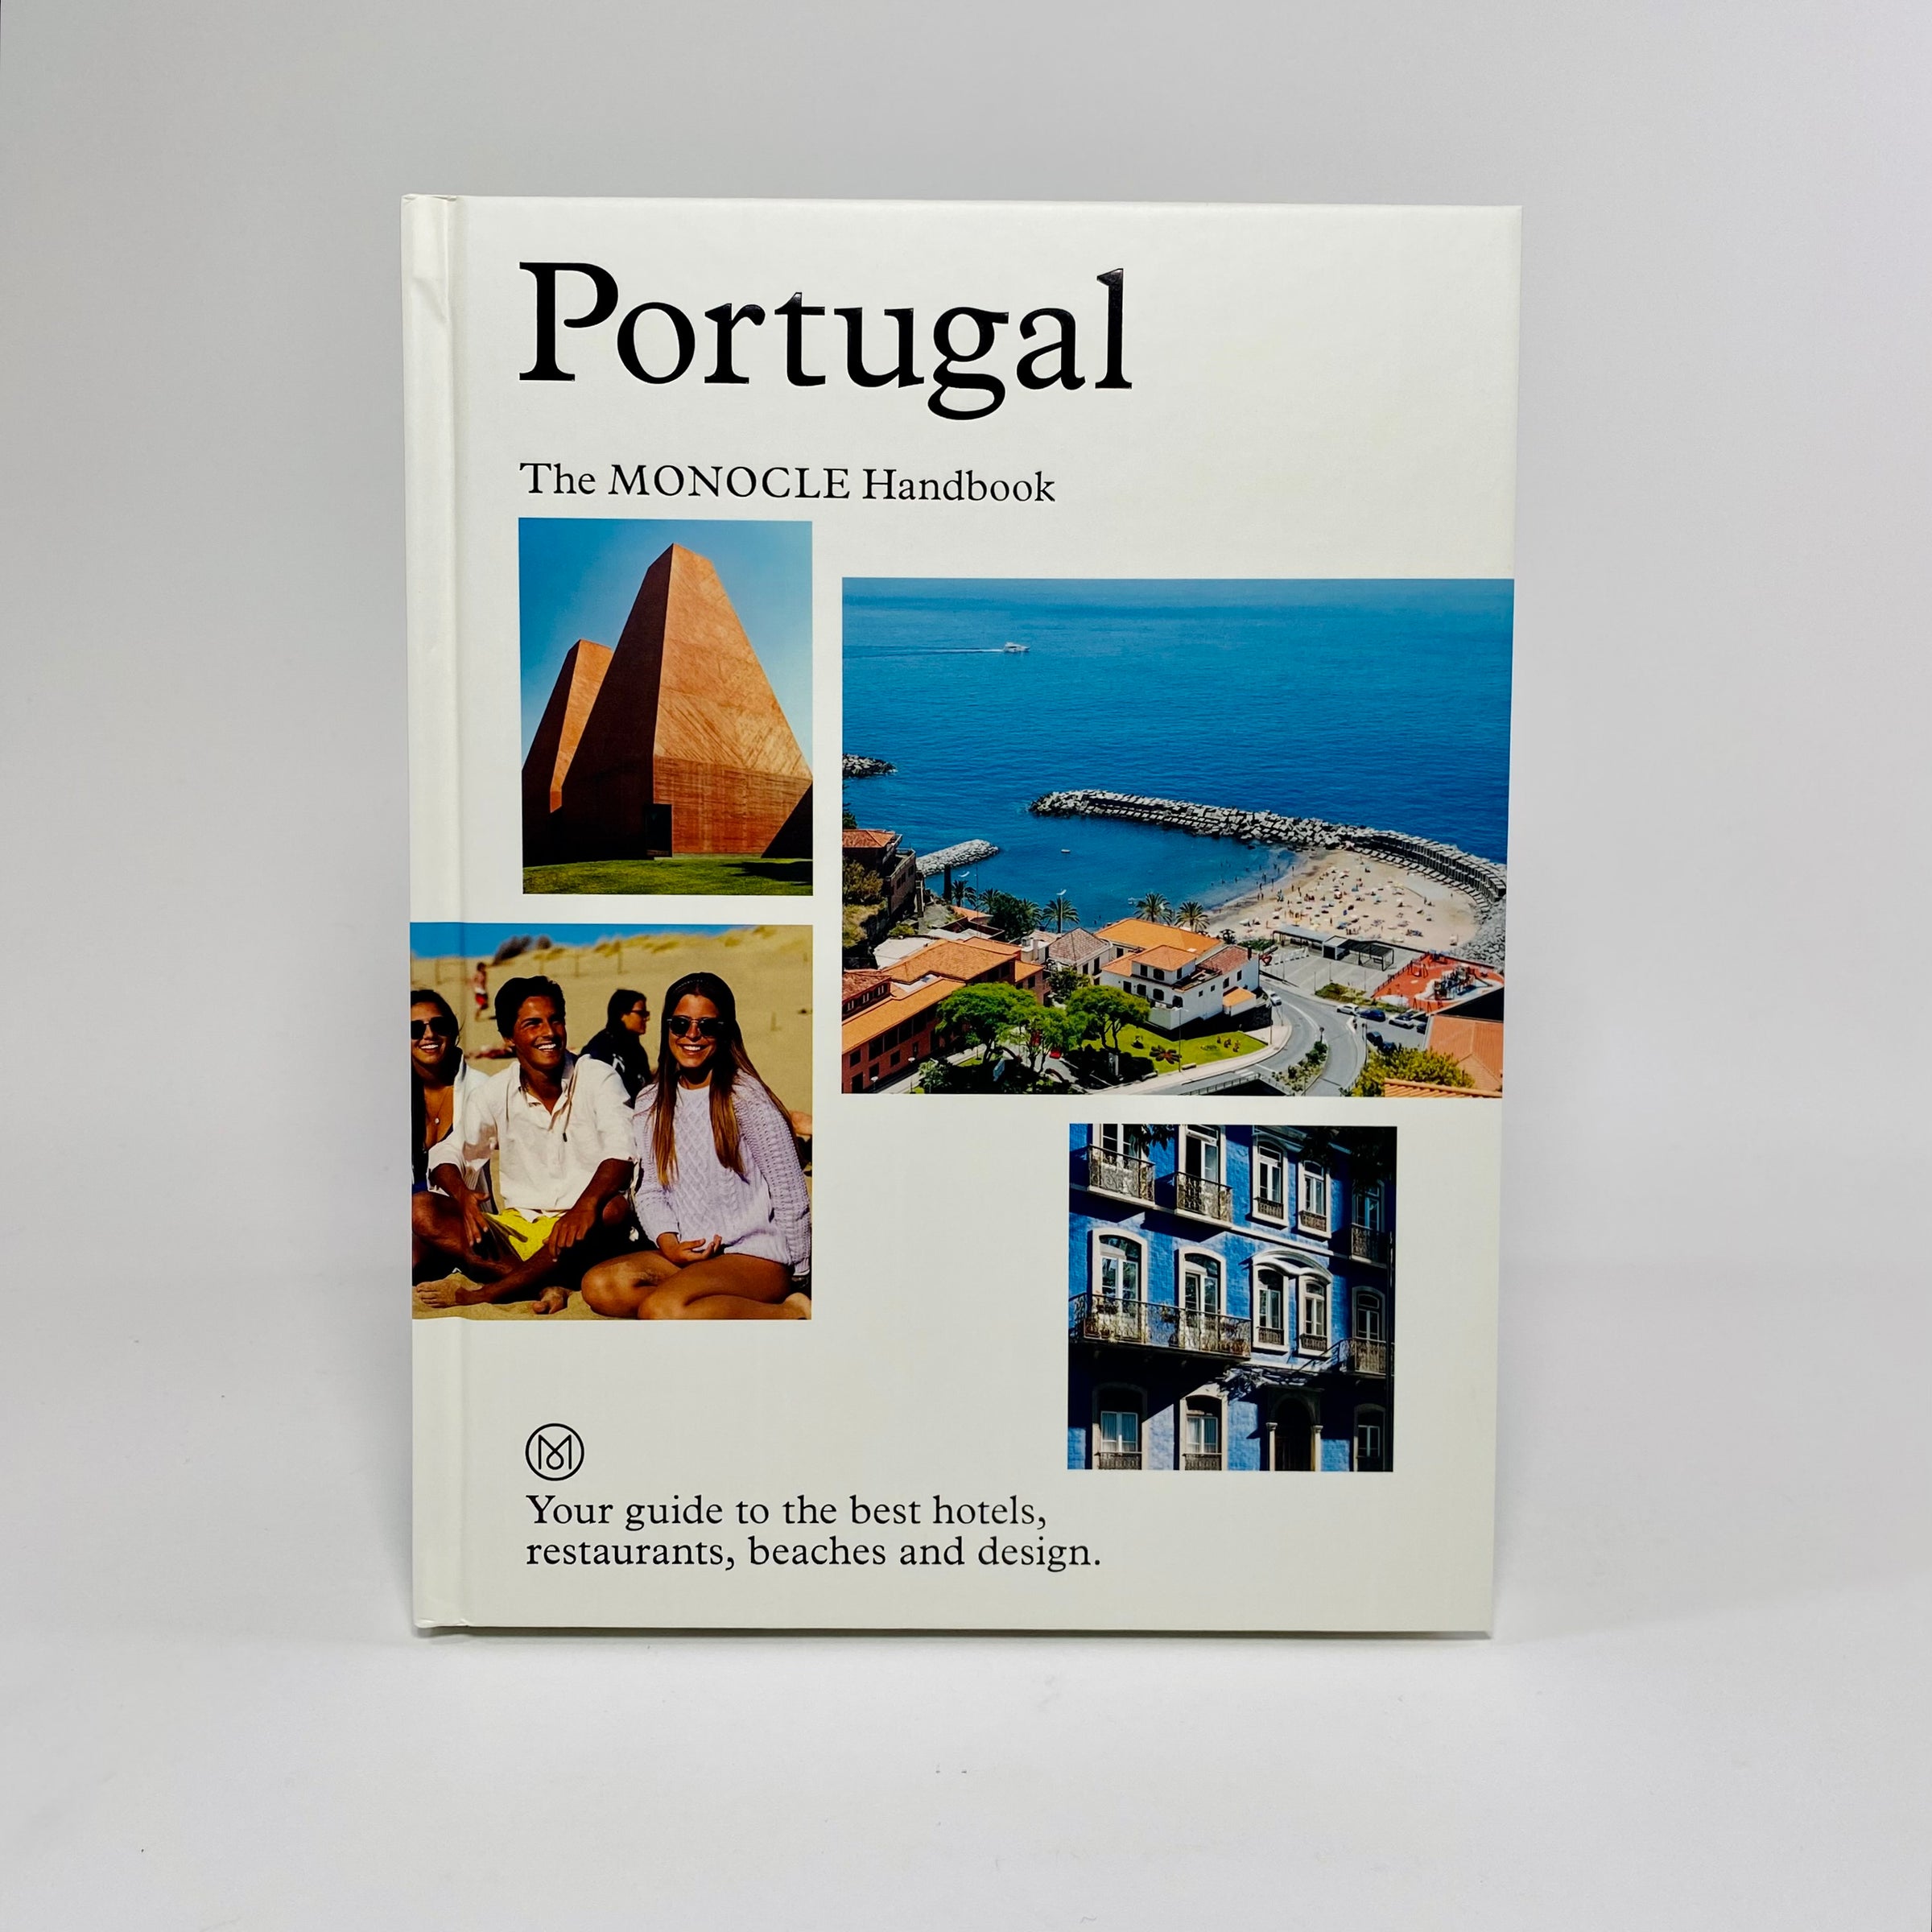 Guia de Portugal publicado pela 'Monocle' com ilustrações portuguesas